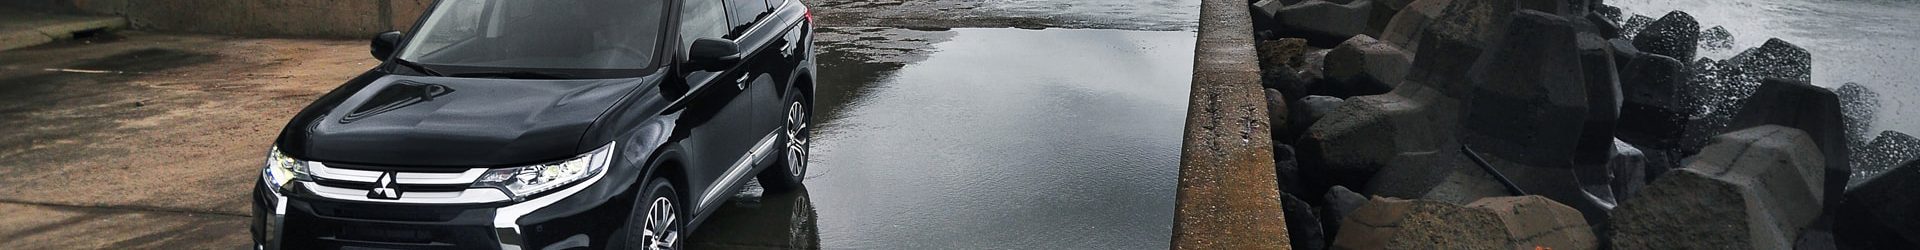 –為雨而生– BMW E92 M3 深灰 拍攝分享